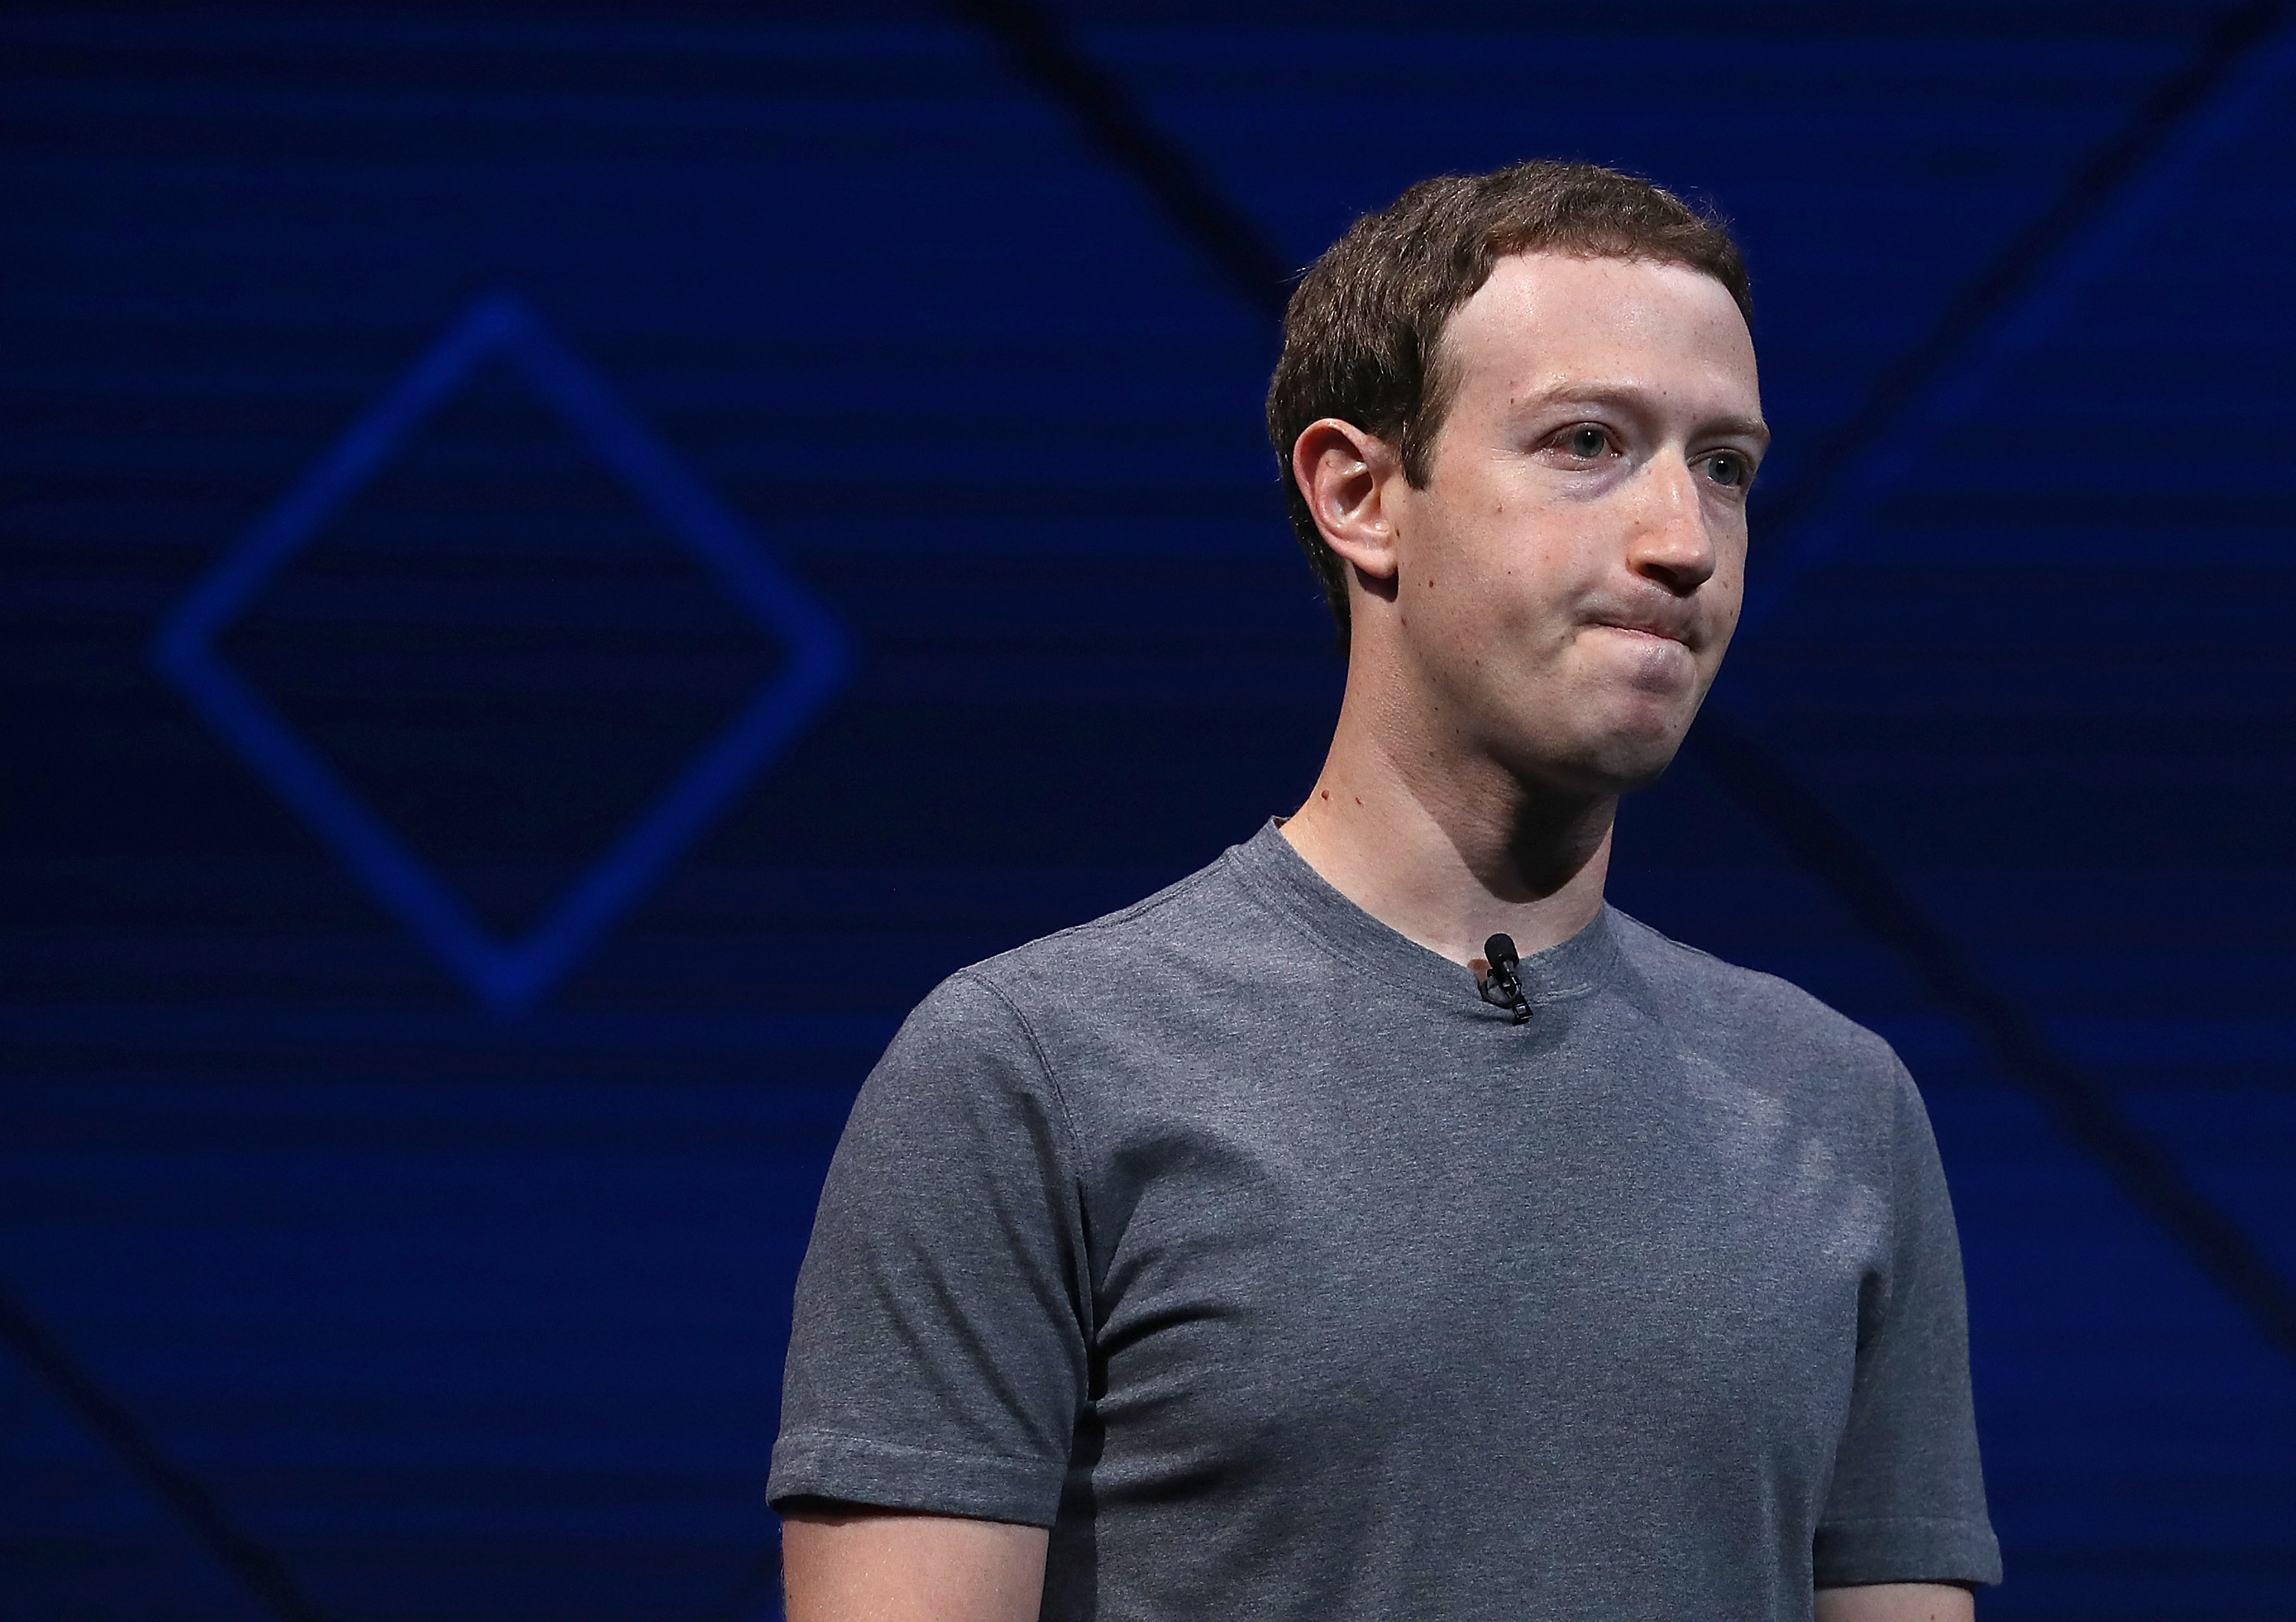 Zuckerberg nyilvánosságra hozta, mit fog mondani a kongresszusi meghallgatásán